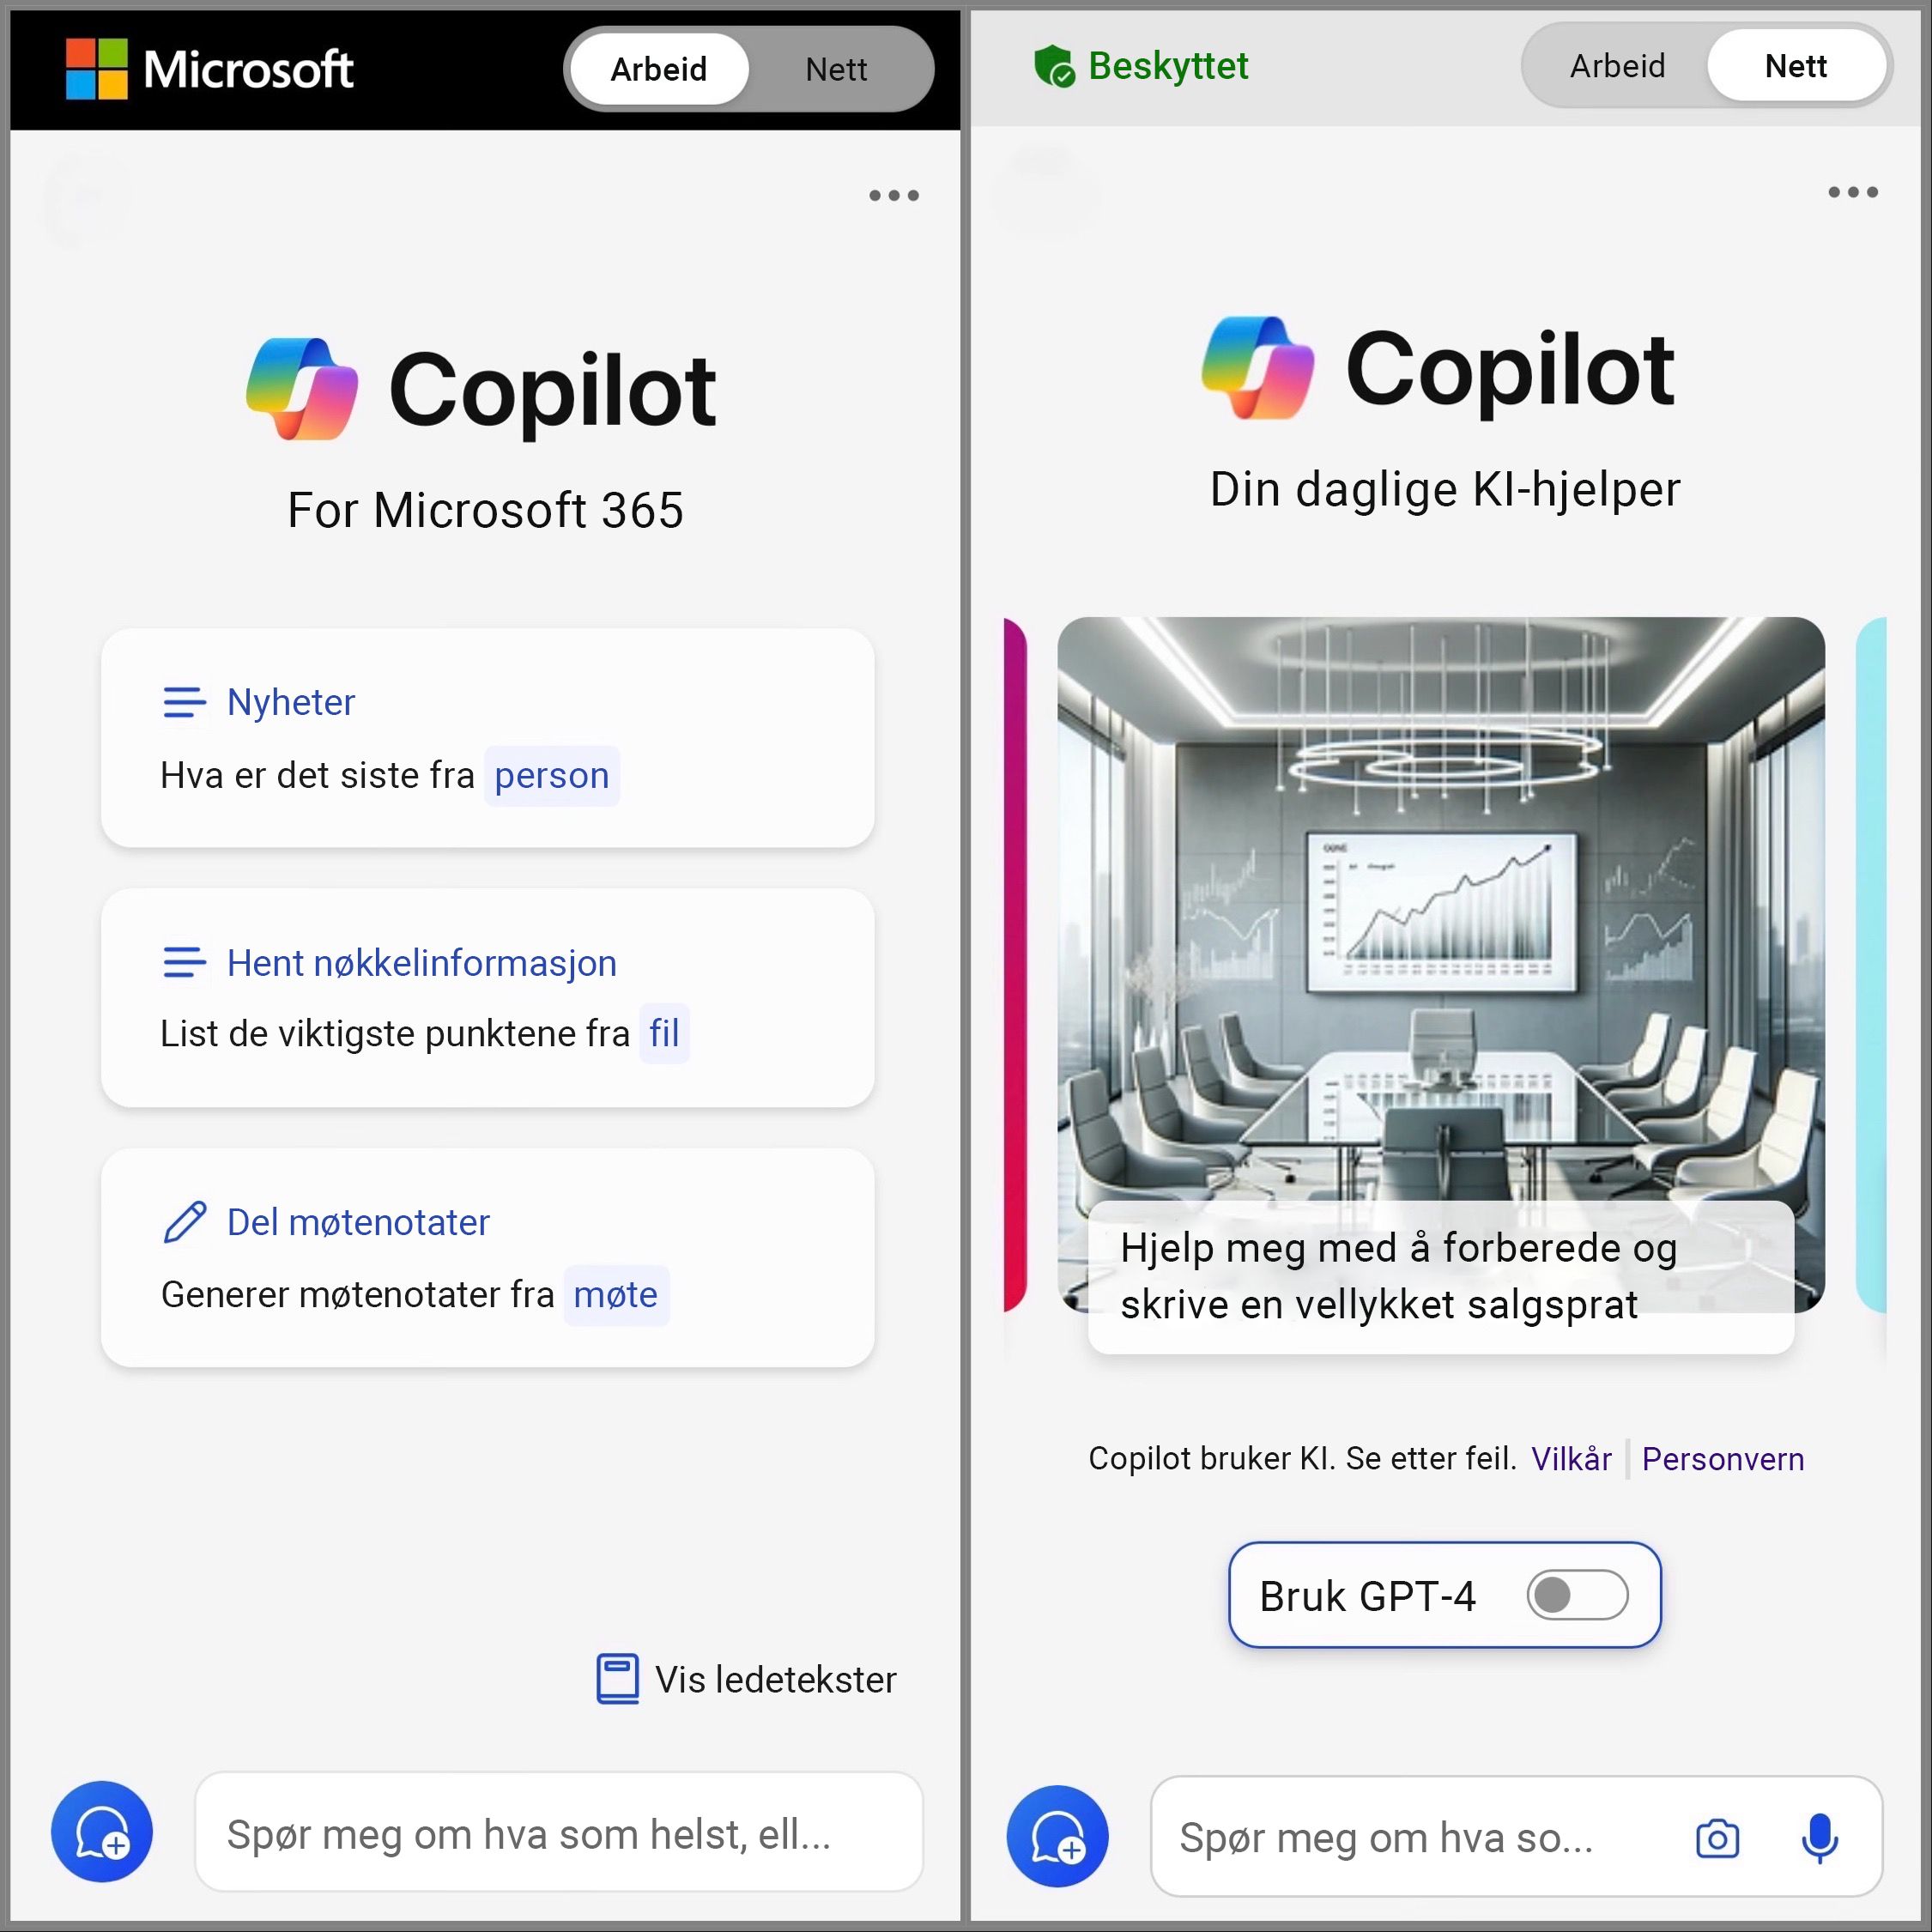 Viser skjermen på Copilot-mobil som er vekslet til Nett og Arbeid for å få tilgang til chatteledeteksten.